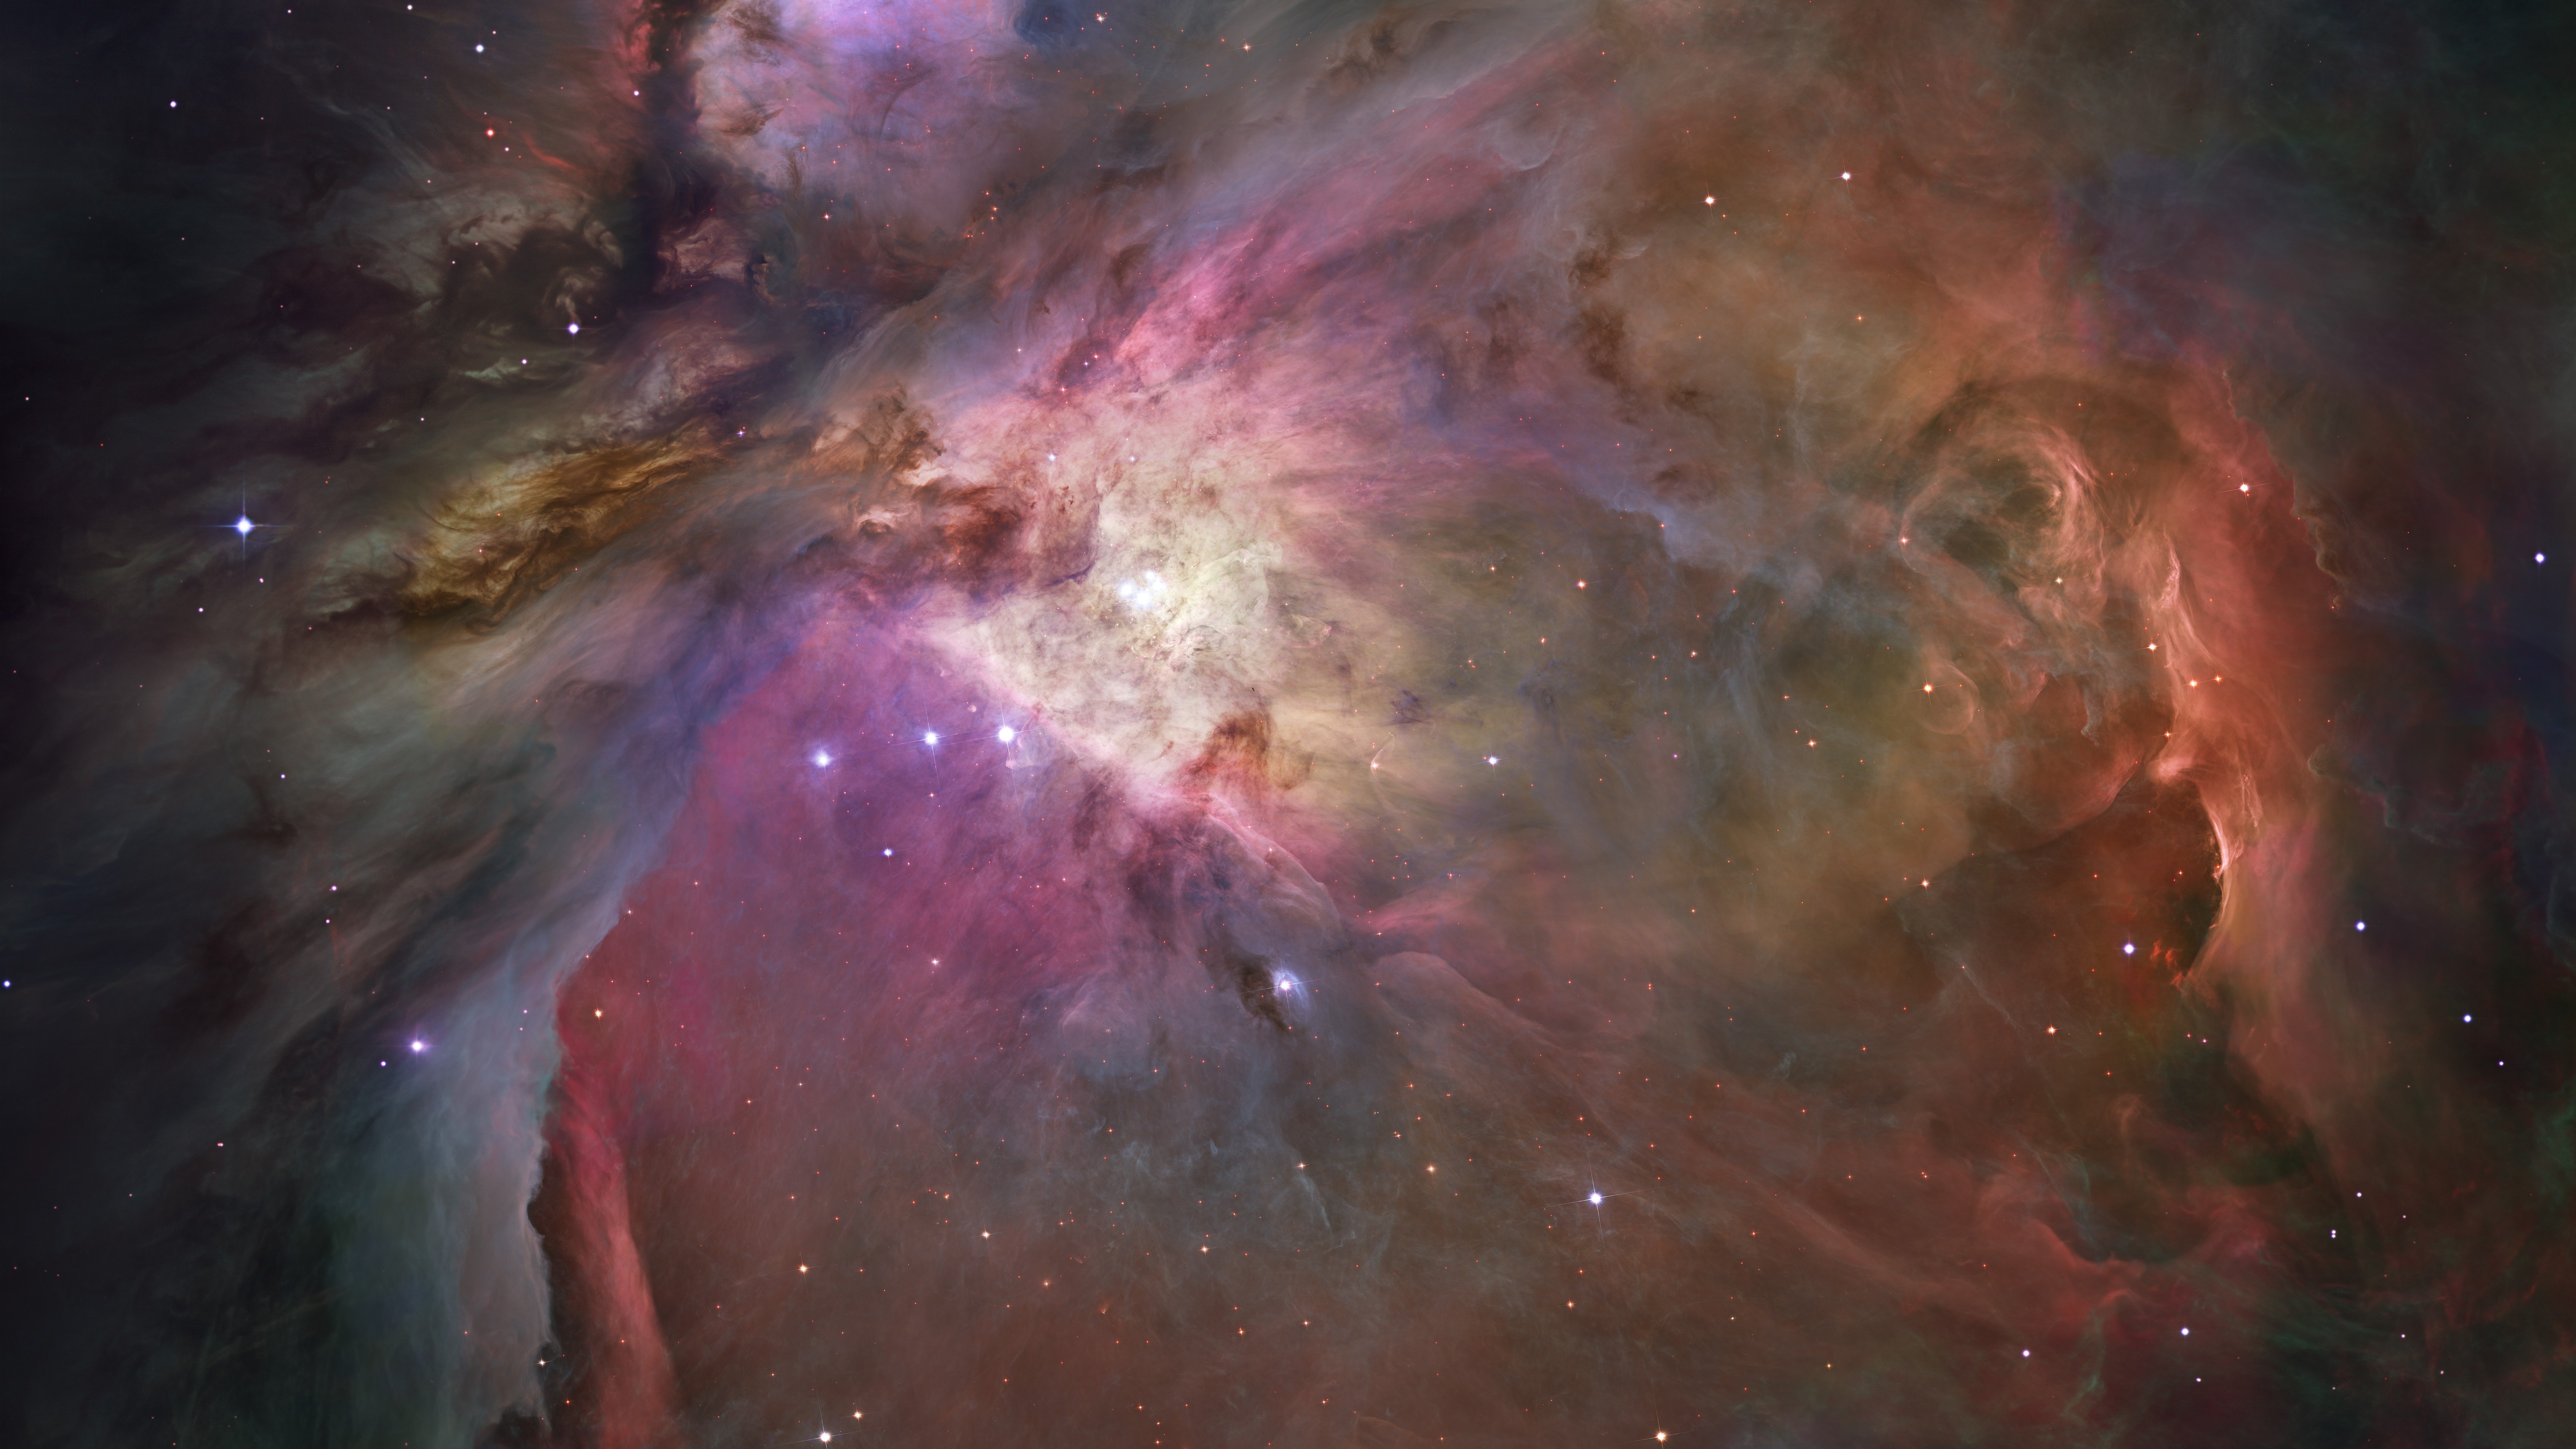 General 5120x2880 space Great Orion Nebula space art digital art nebula Hubble Hubble Deep Field